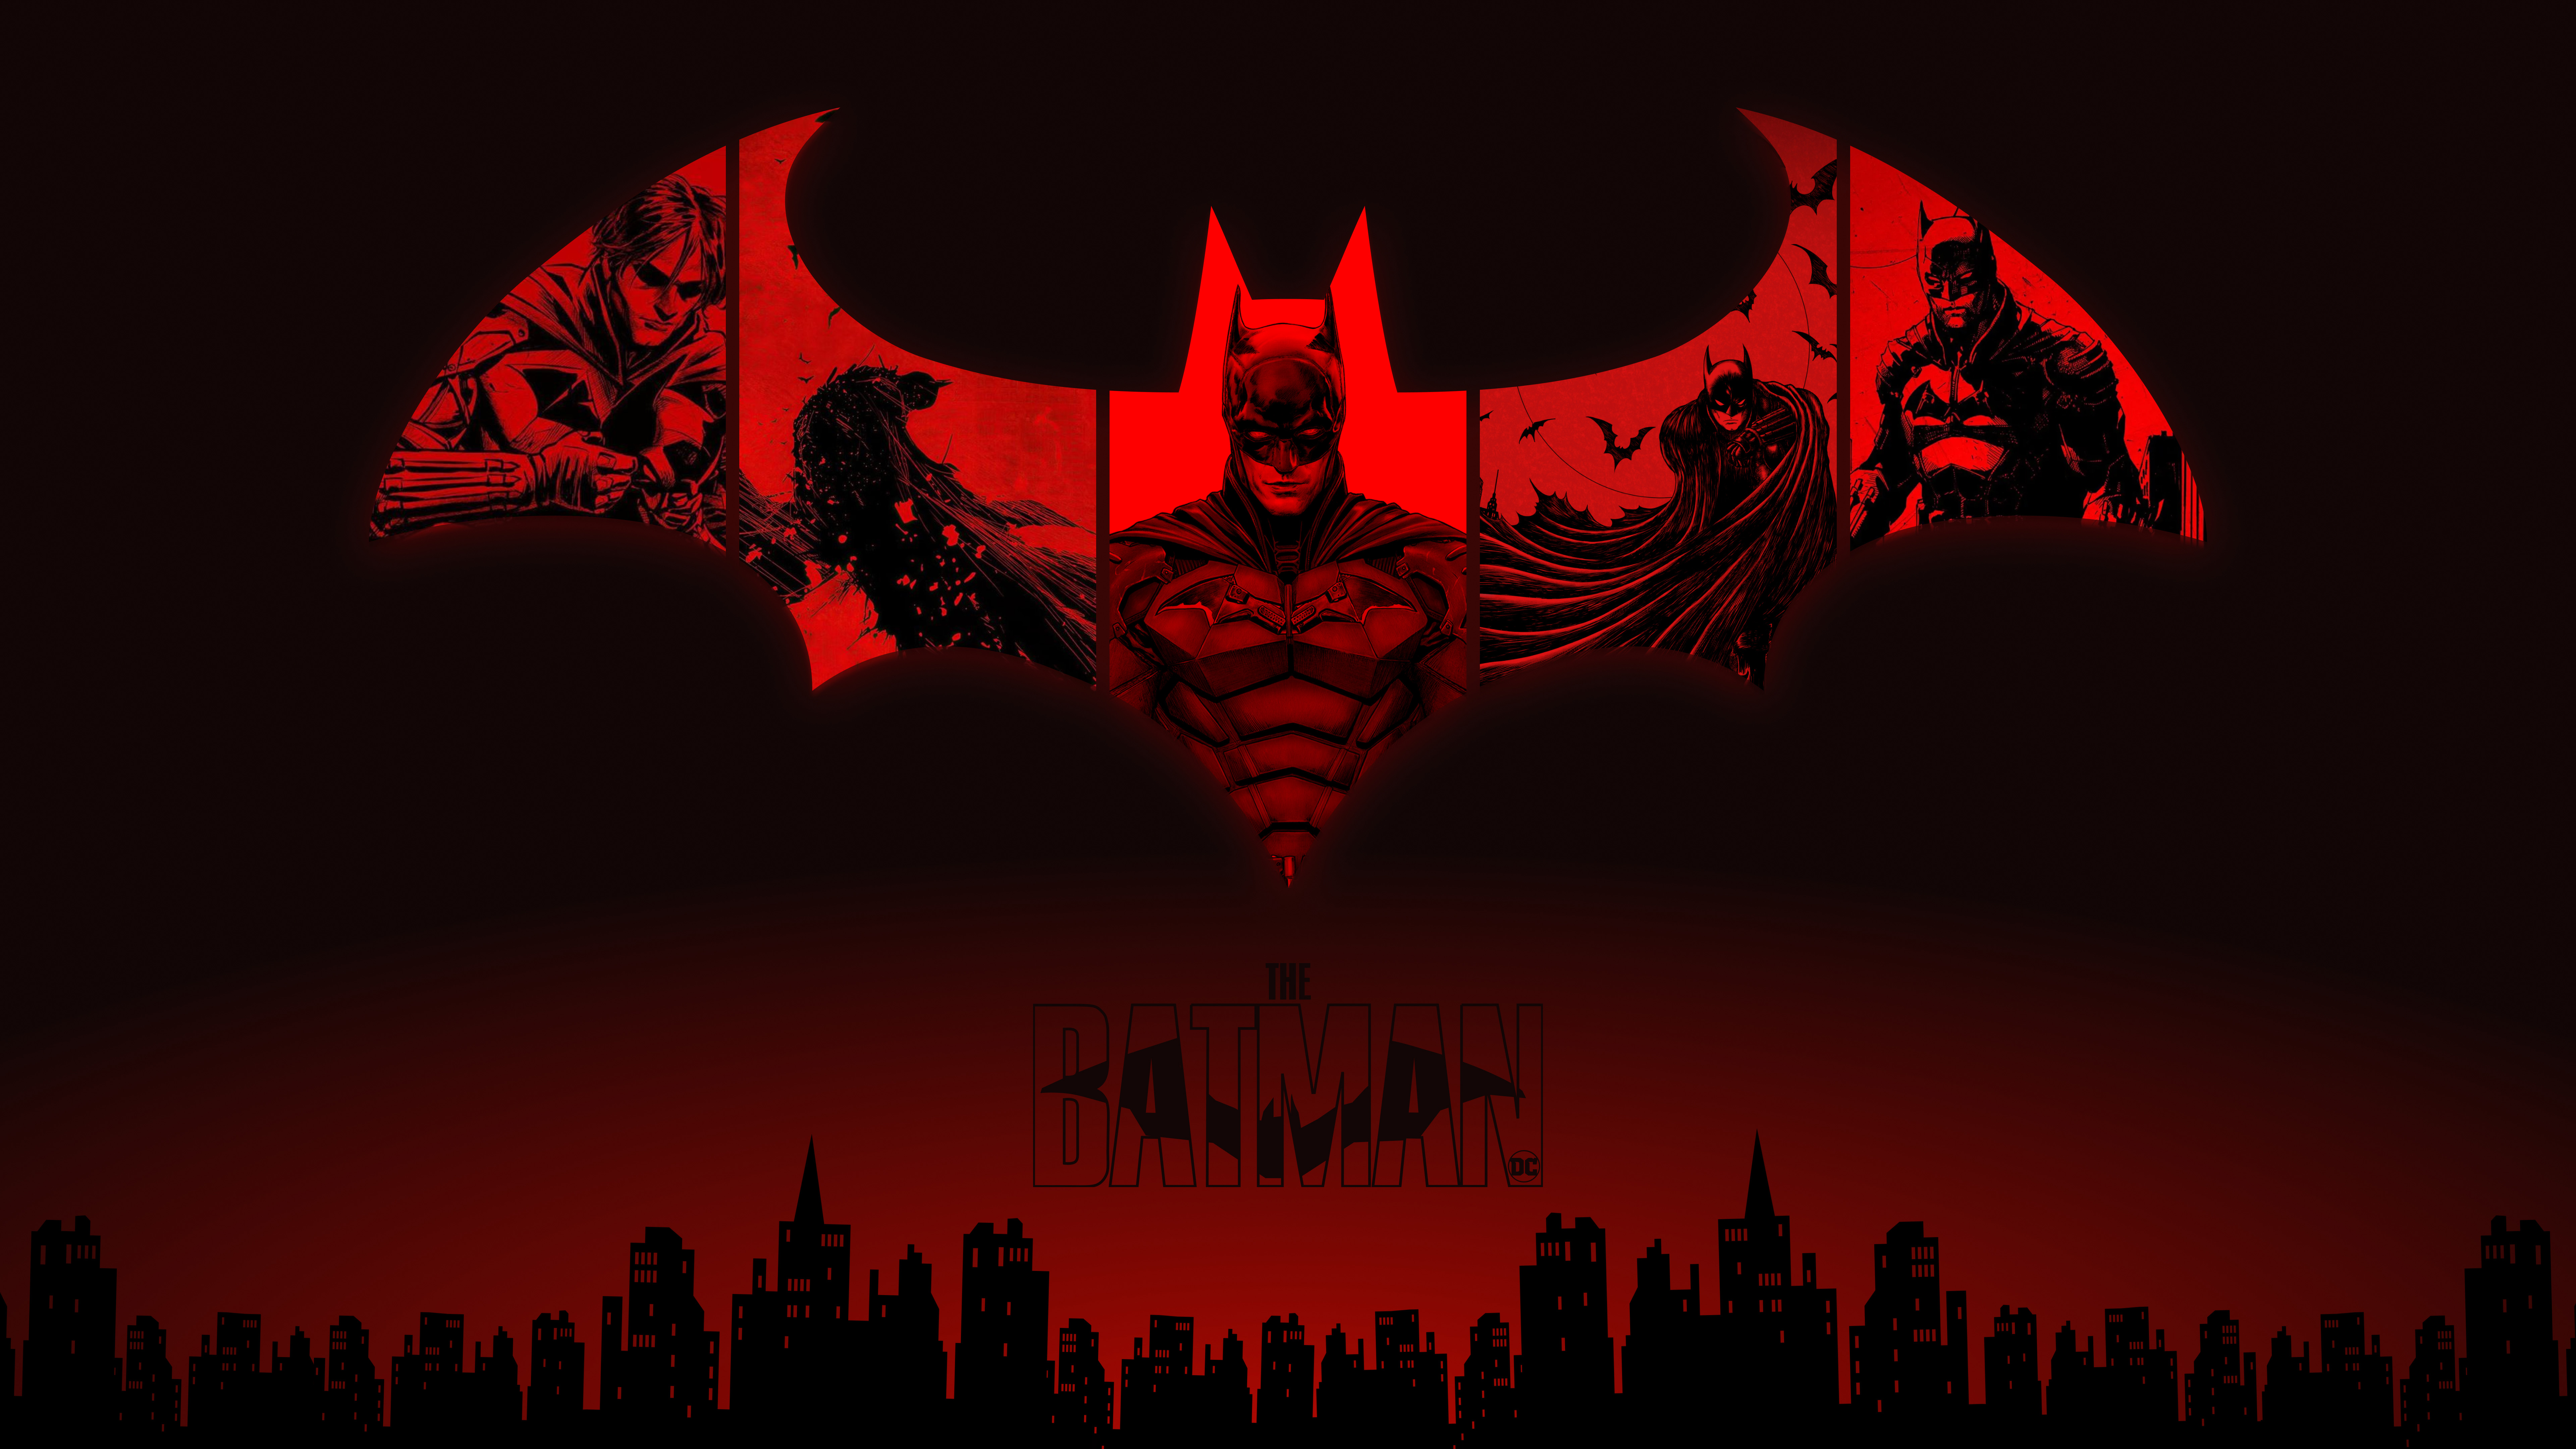 The Batman DC Darkness Wallpaper 4k HD ID:7096